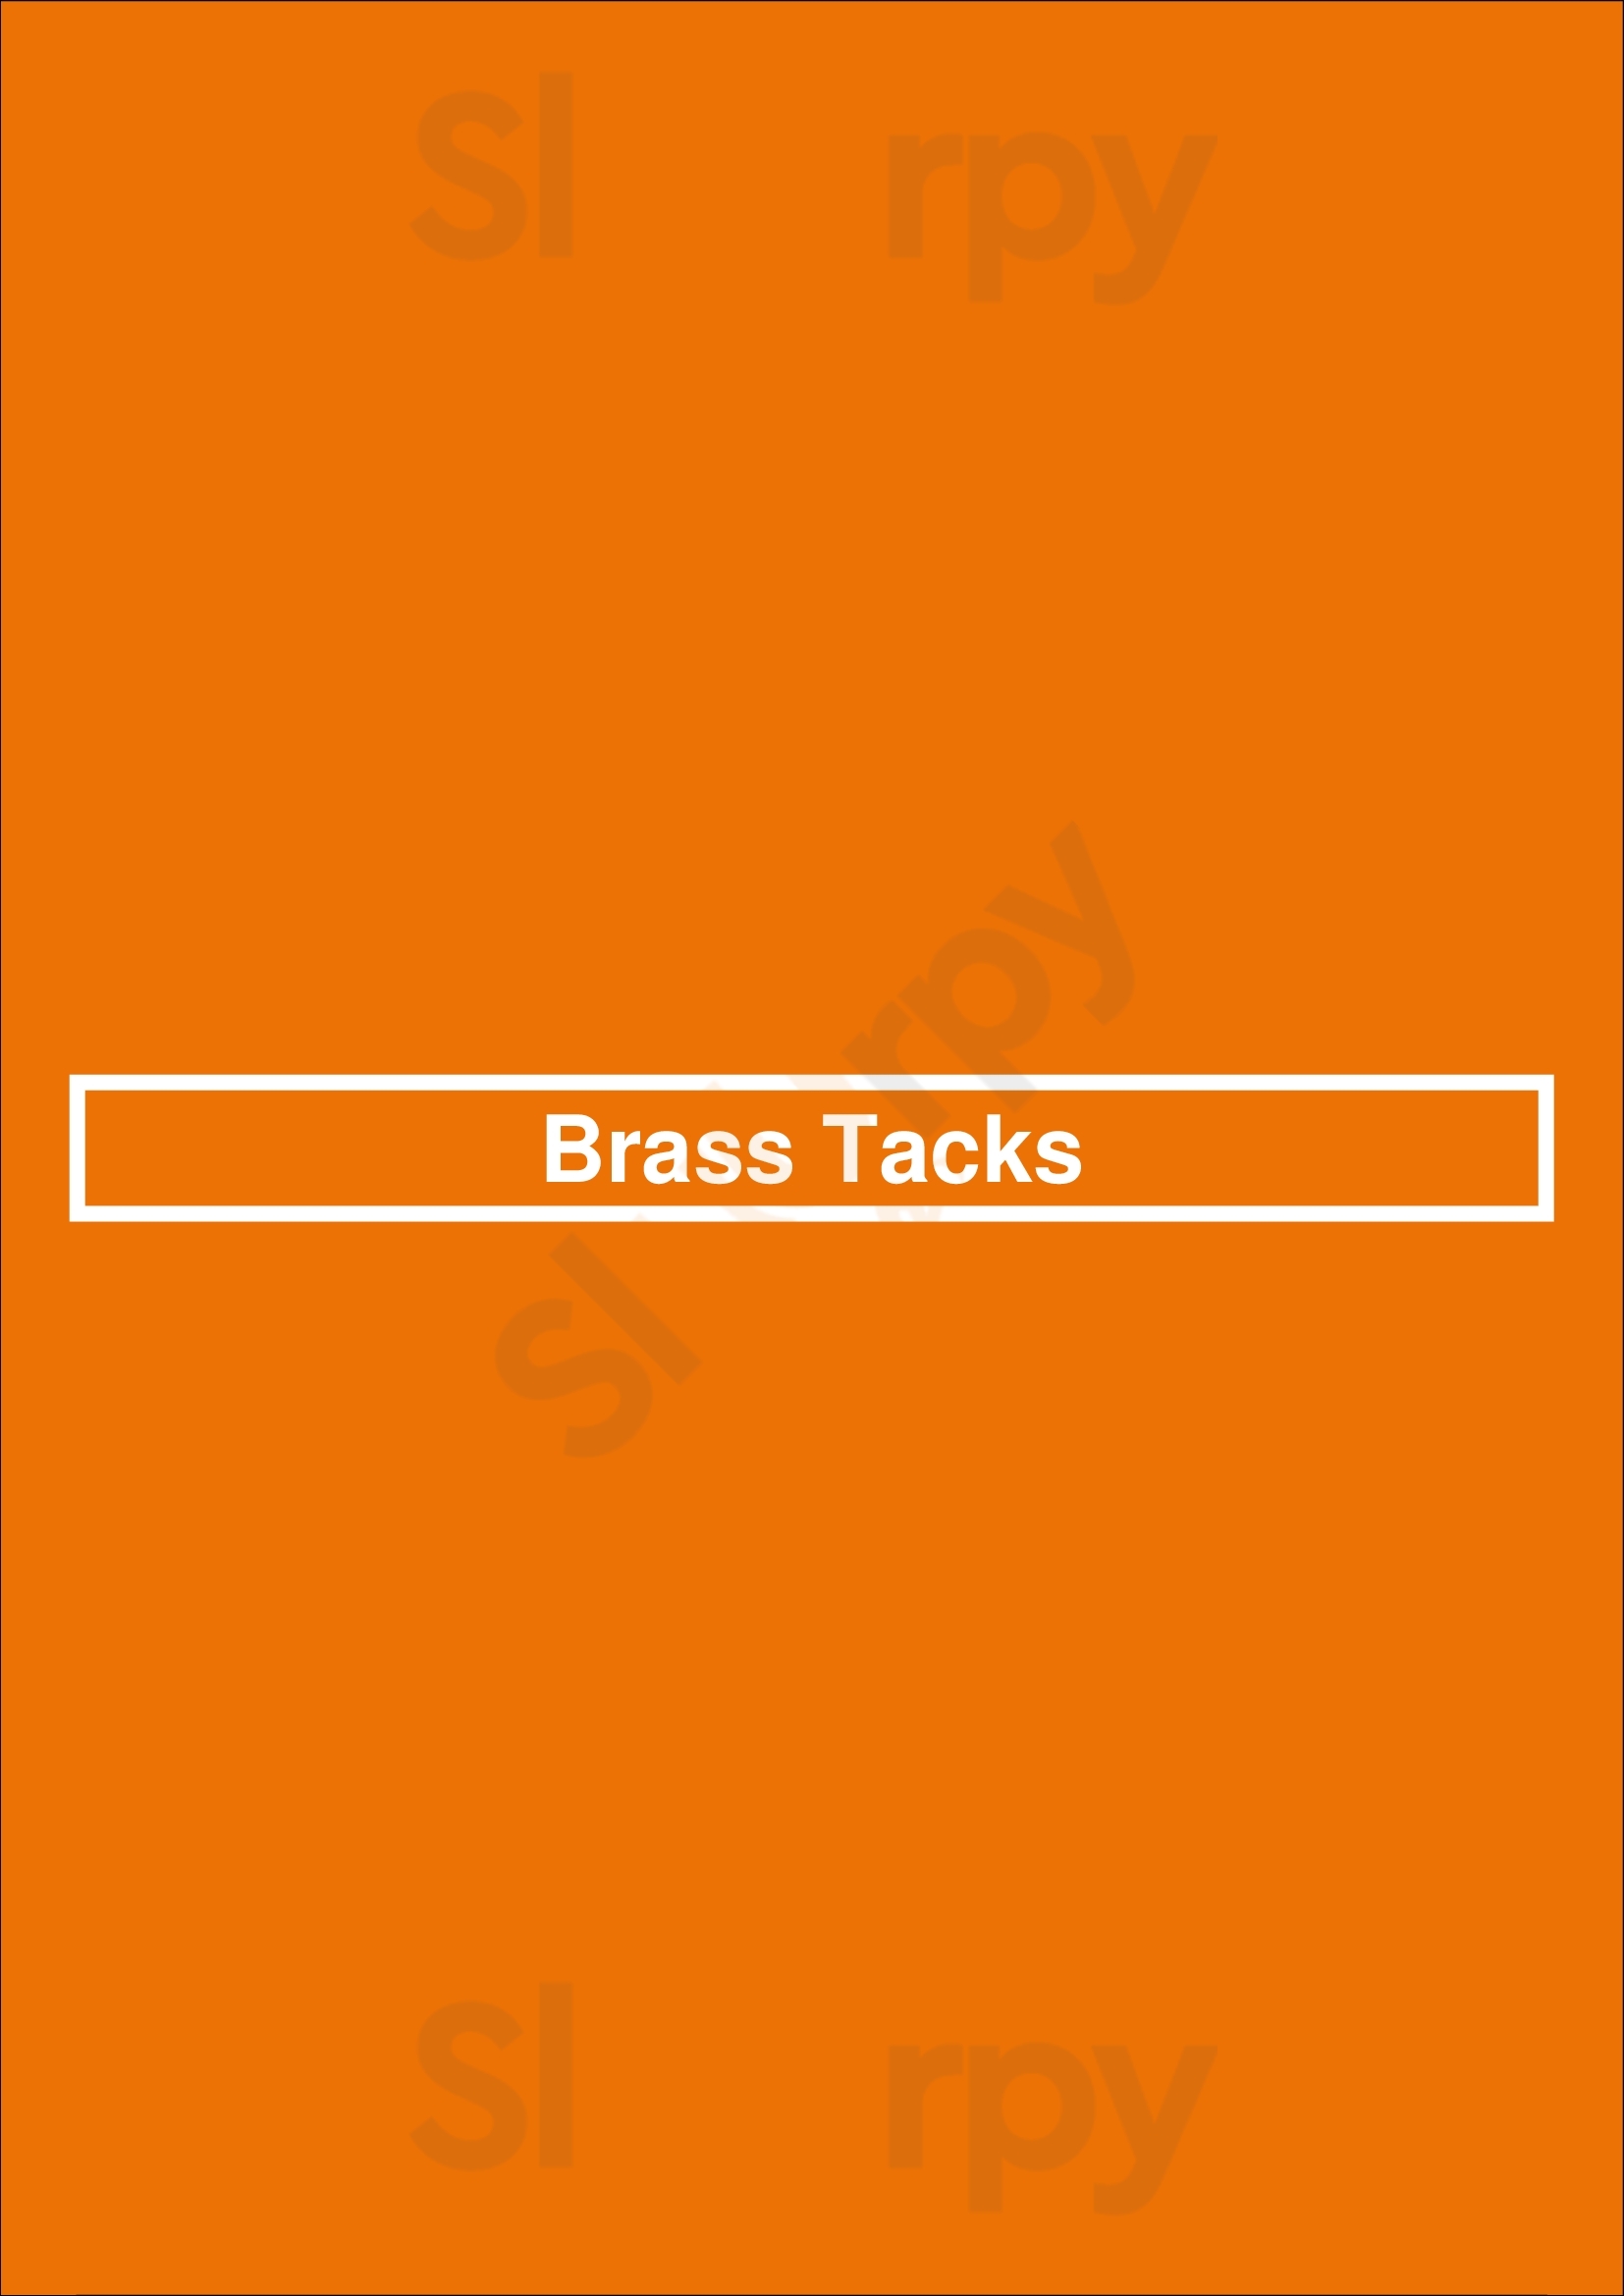 Brass Tacks Denver Menu - 1